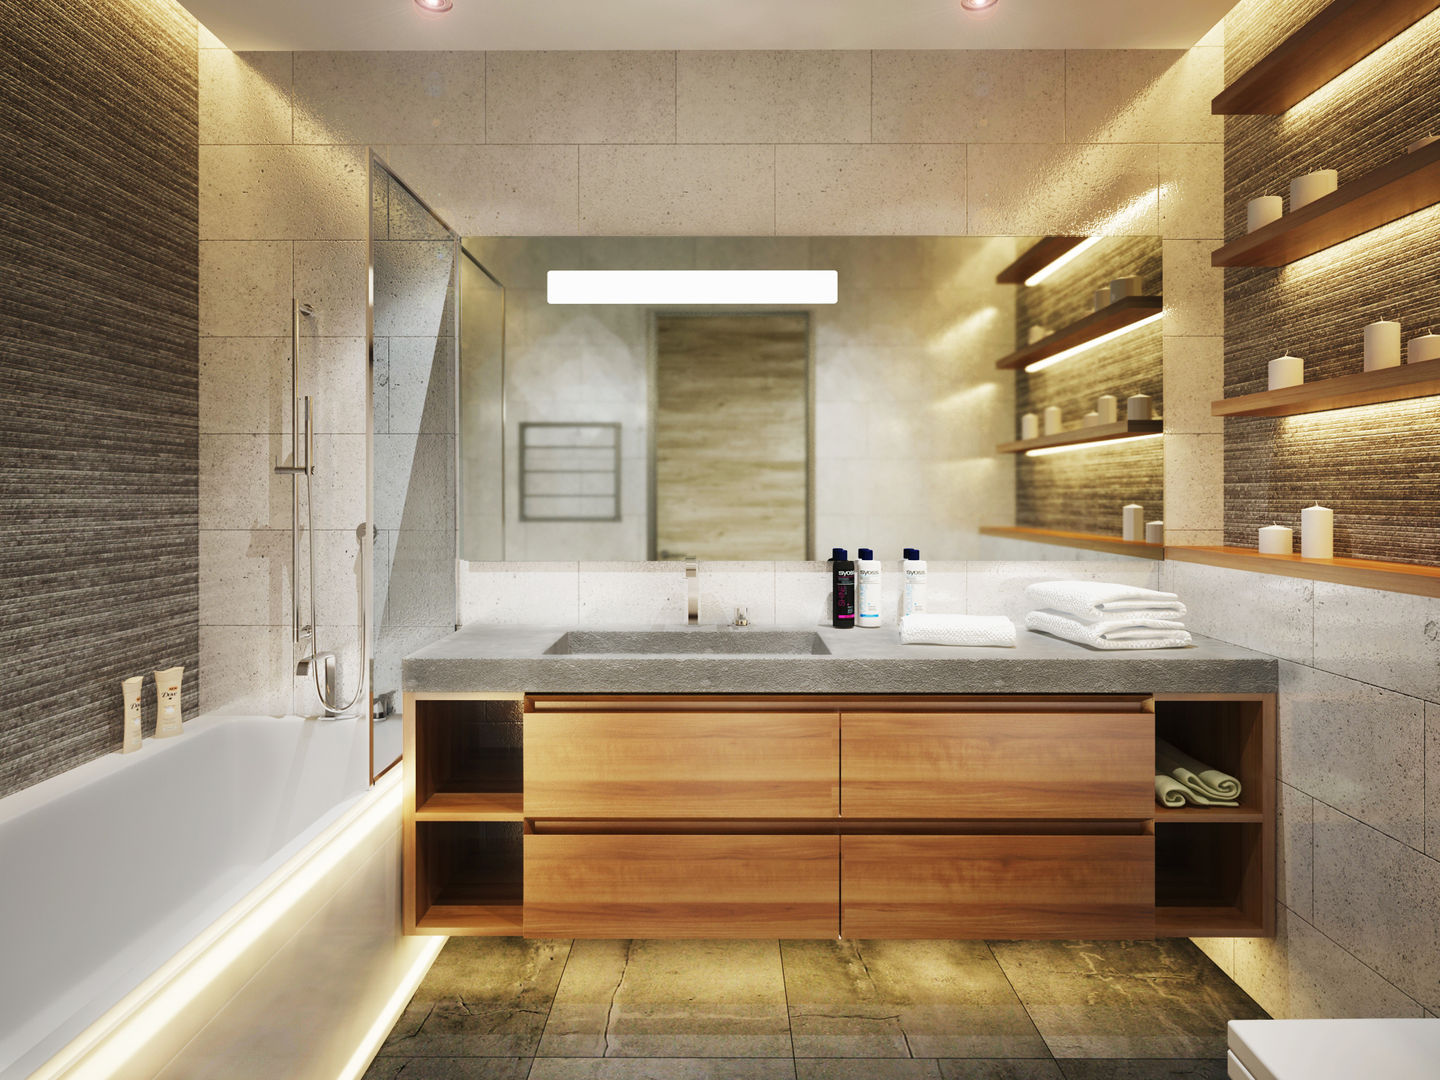 Квартира в современном минимализме, Polovets design studio Polovets design studio Minimalist bathroom